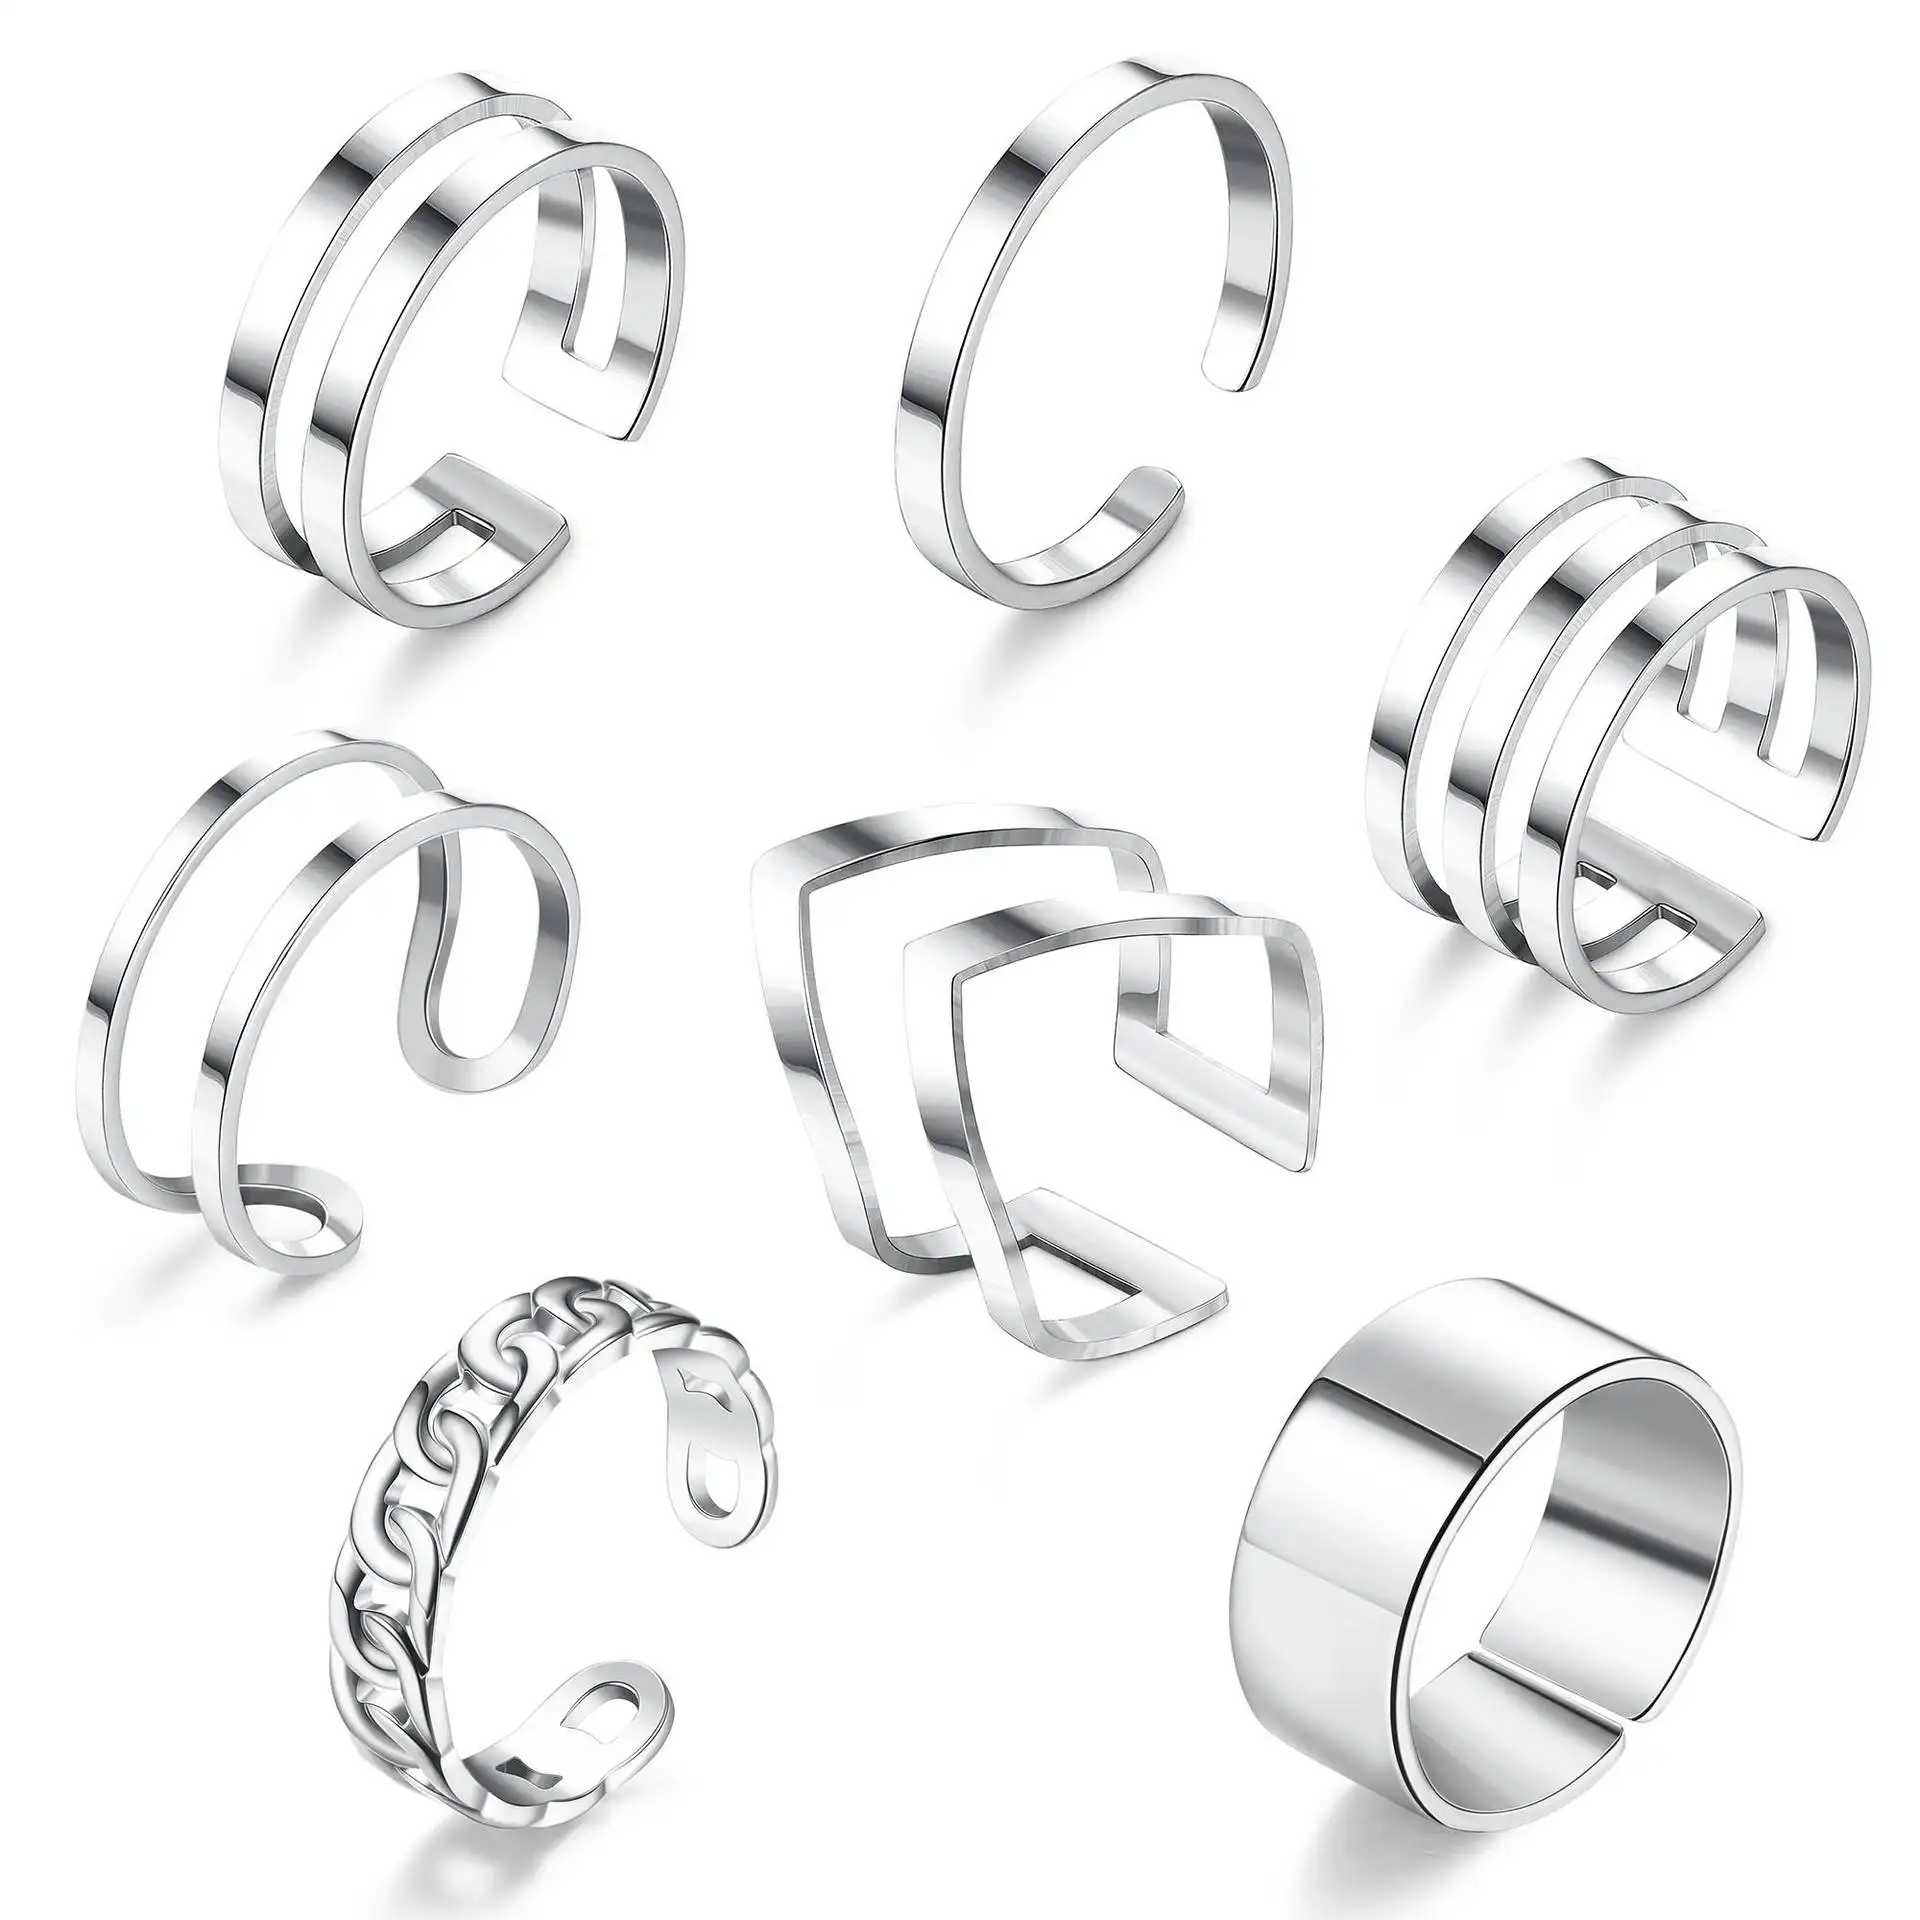 7 pièces anneaux d'orteil manchette ouvert été Knuckle pied géométrique réglable argent acier inoxydable mode bijoux orteil anneau